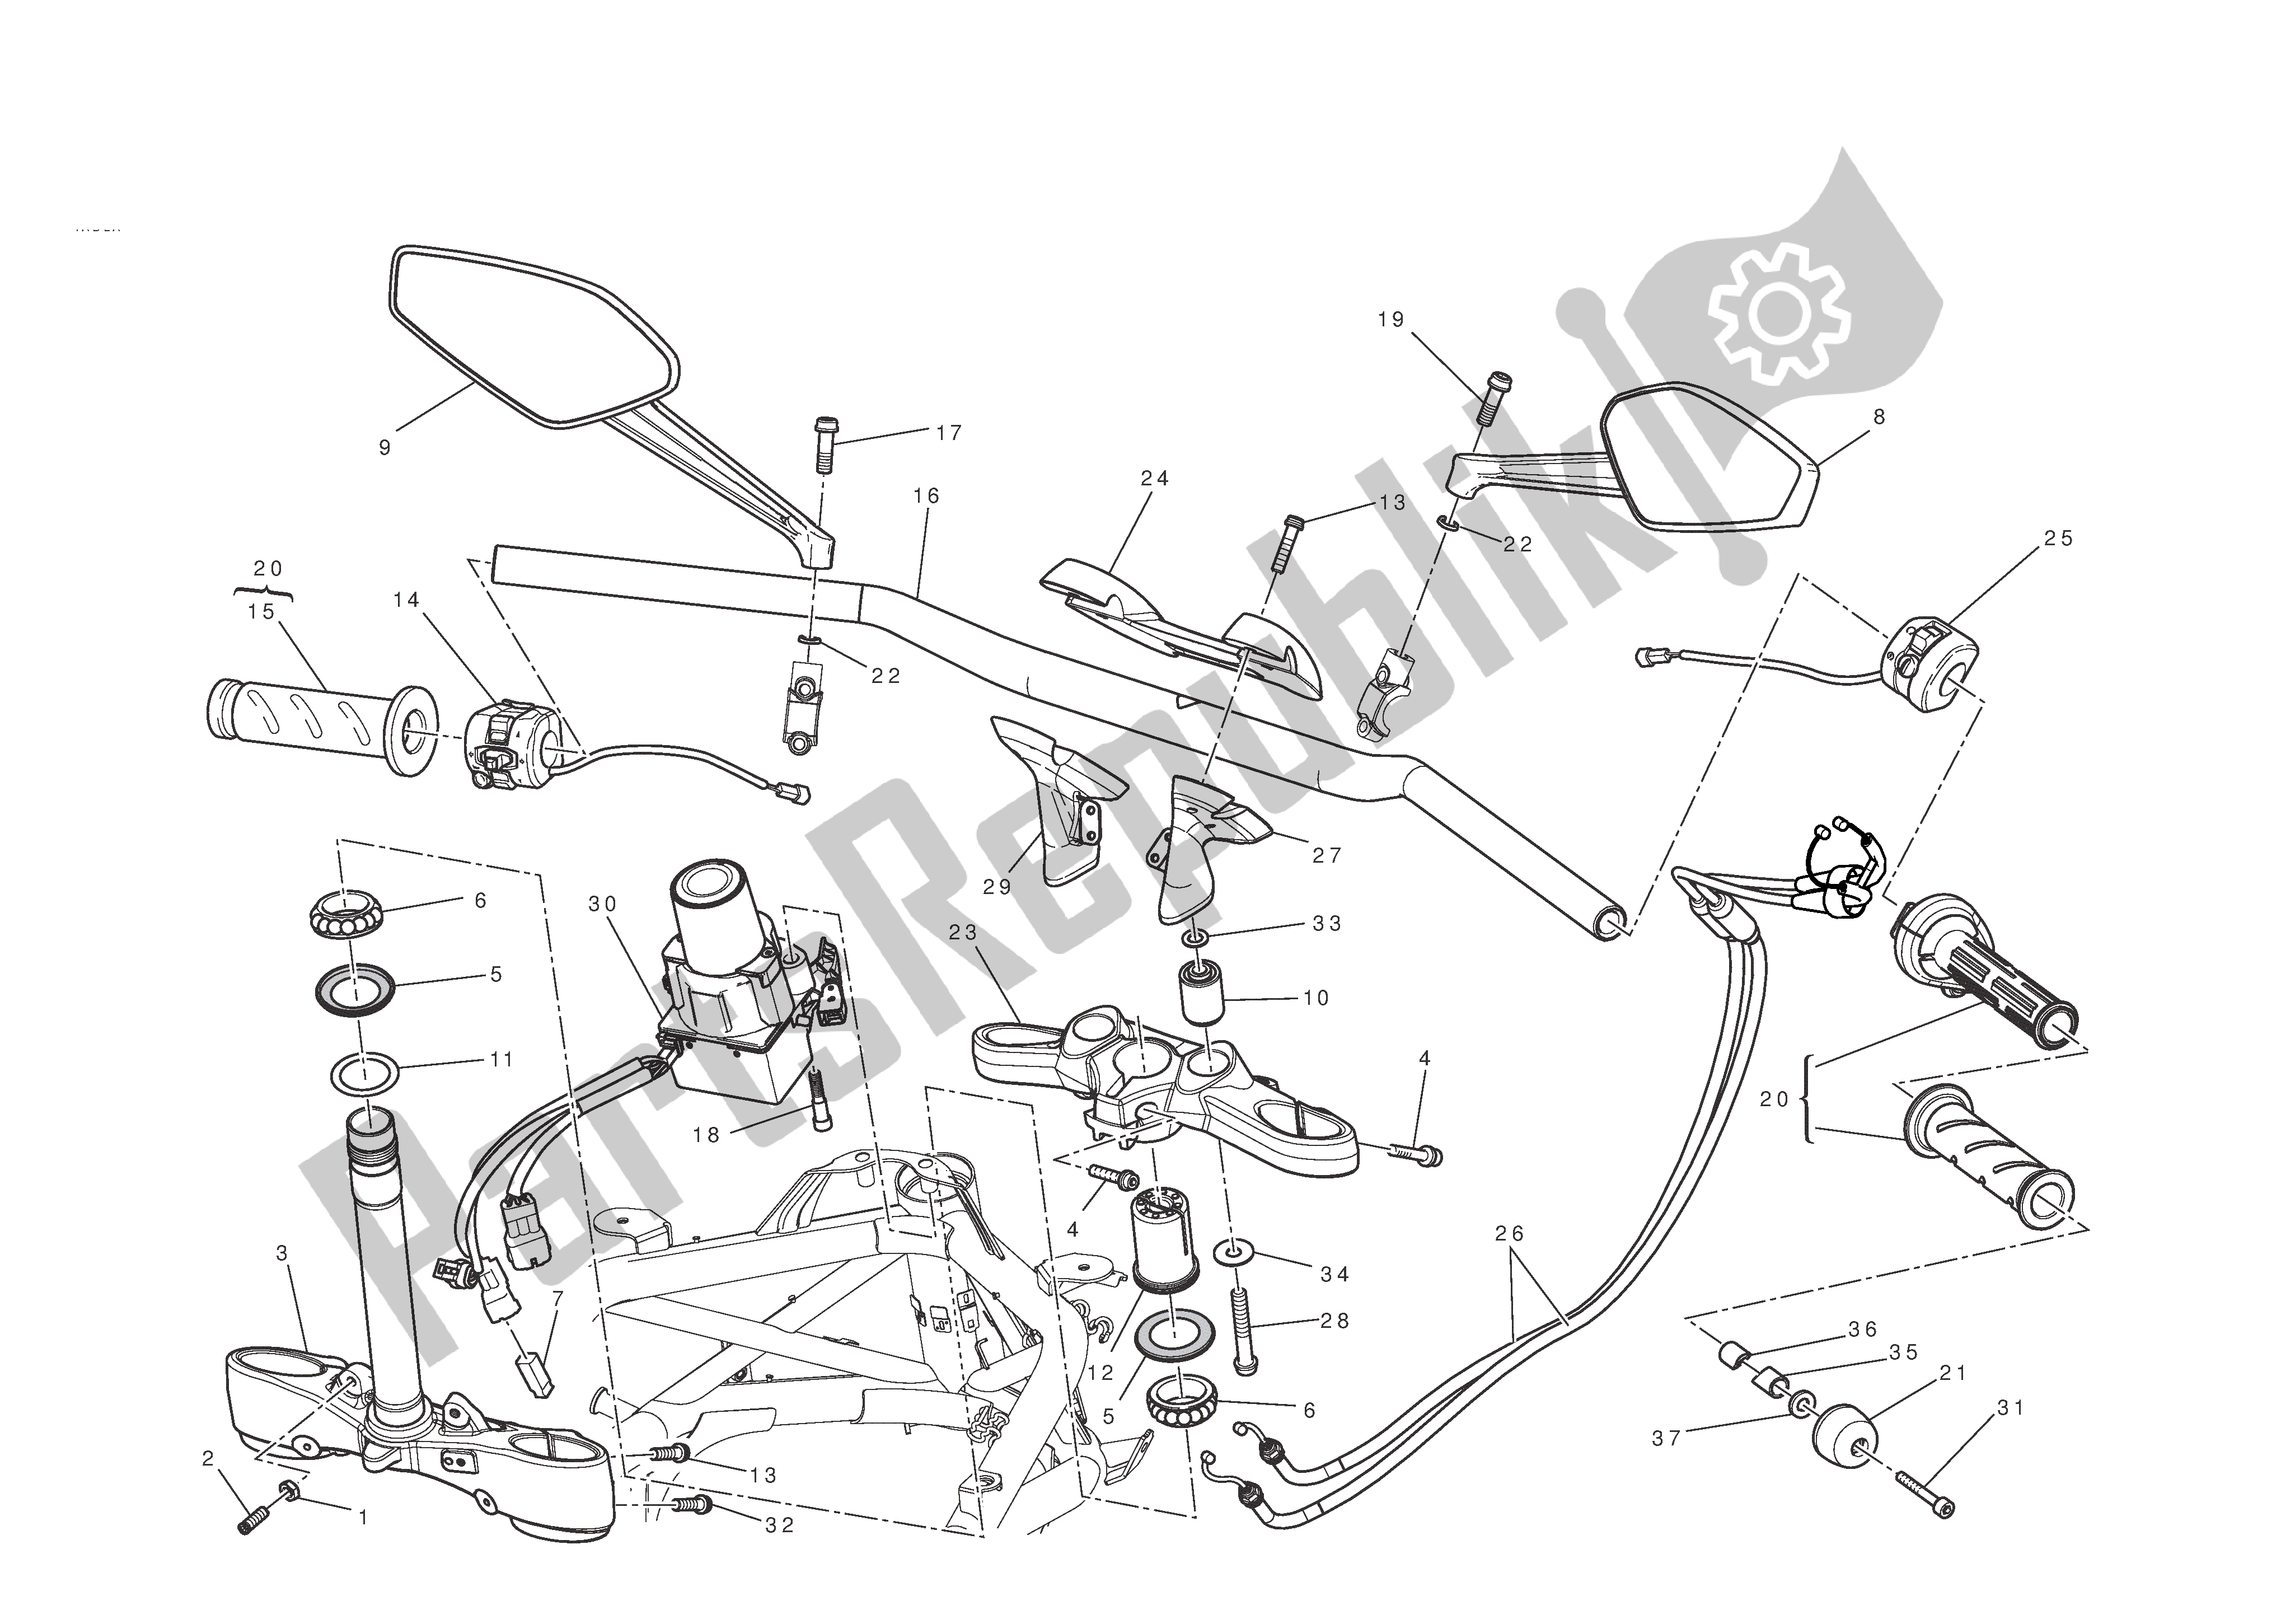 Todas las partes para Manillar Y Controles de Ducati Diavel 1200 2011